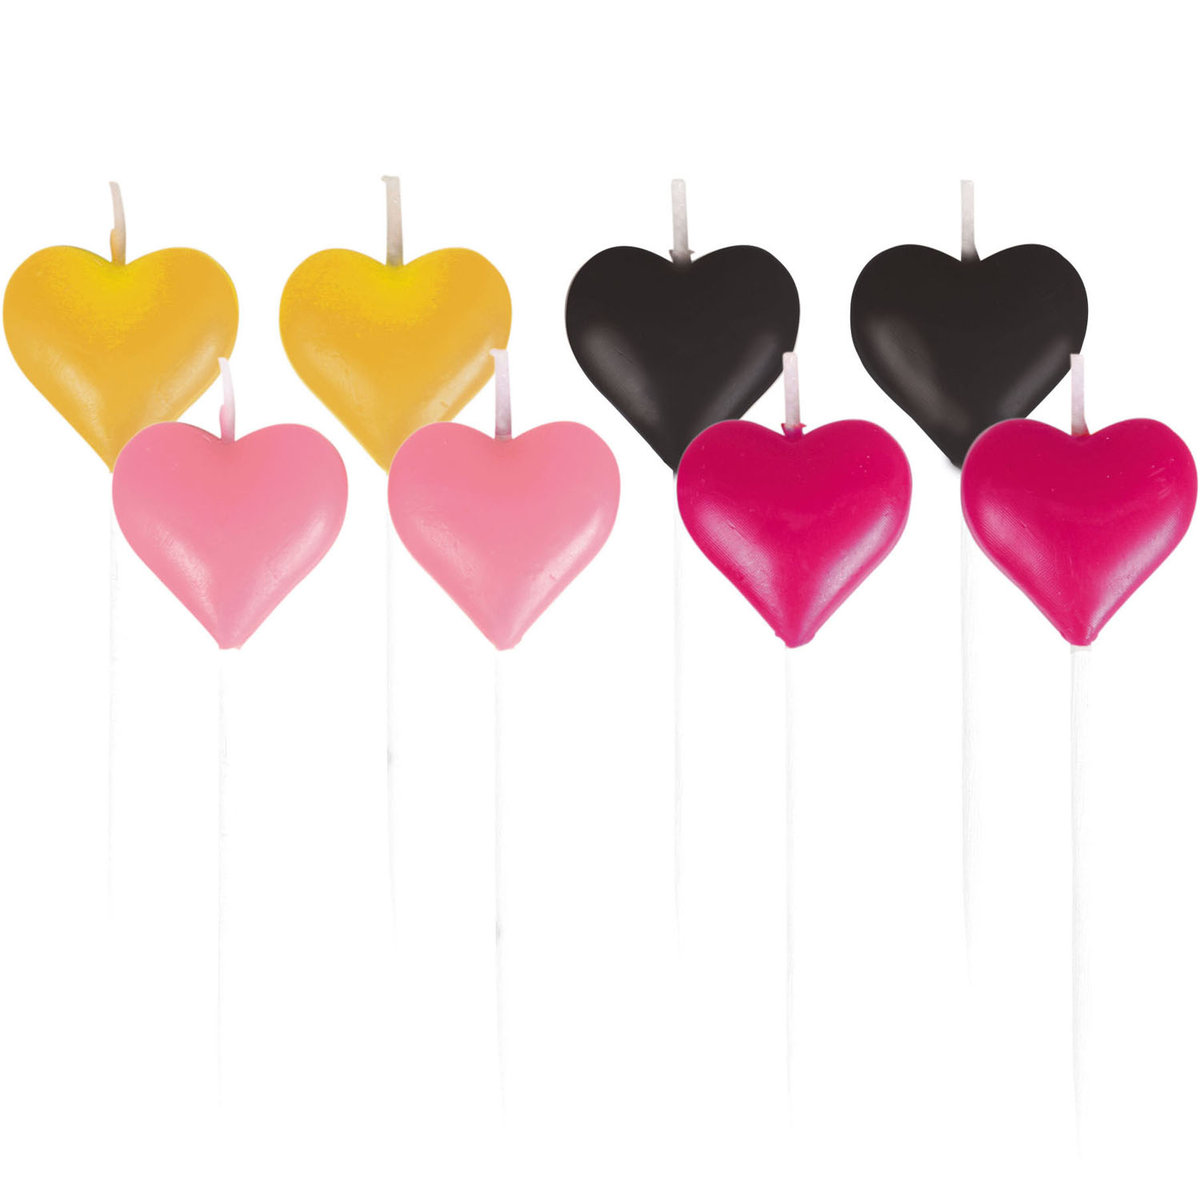 NoName figurka świece serce 7 cm żółty/czarny/różowy 8 sztuk twm_506630